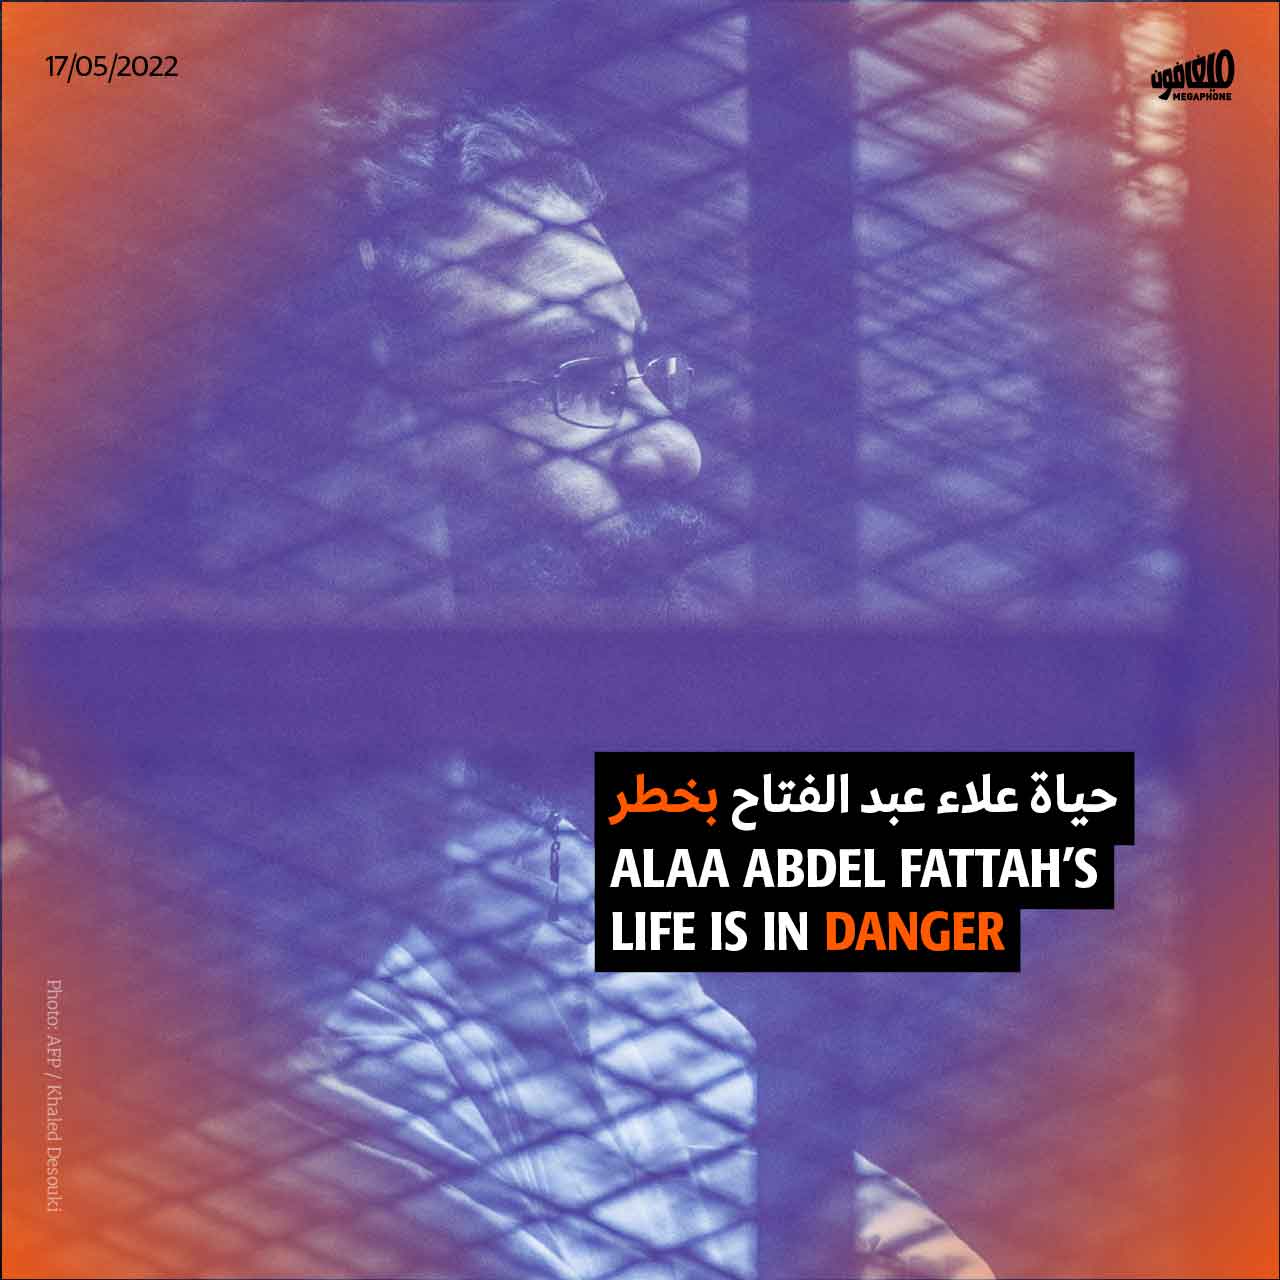 حياة علاء عبد الفتاح بخطر 